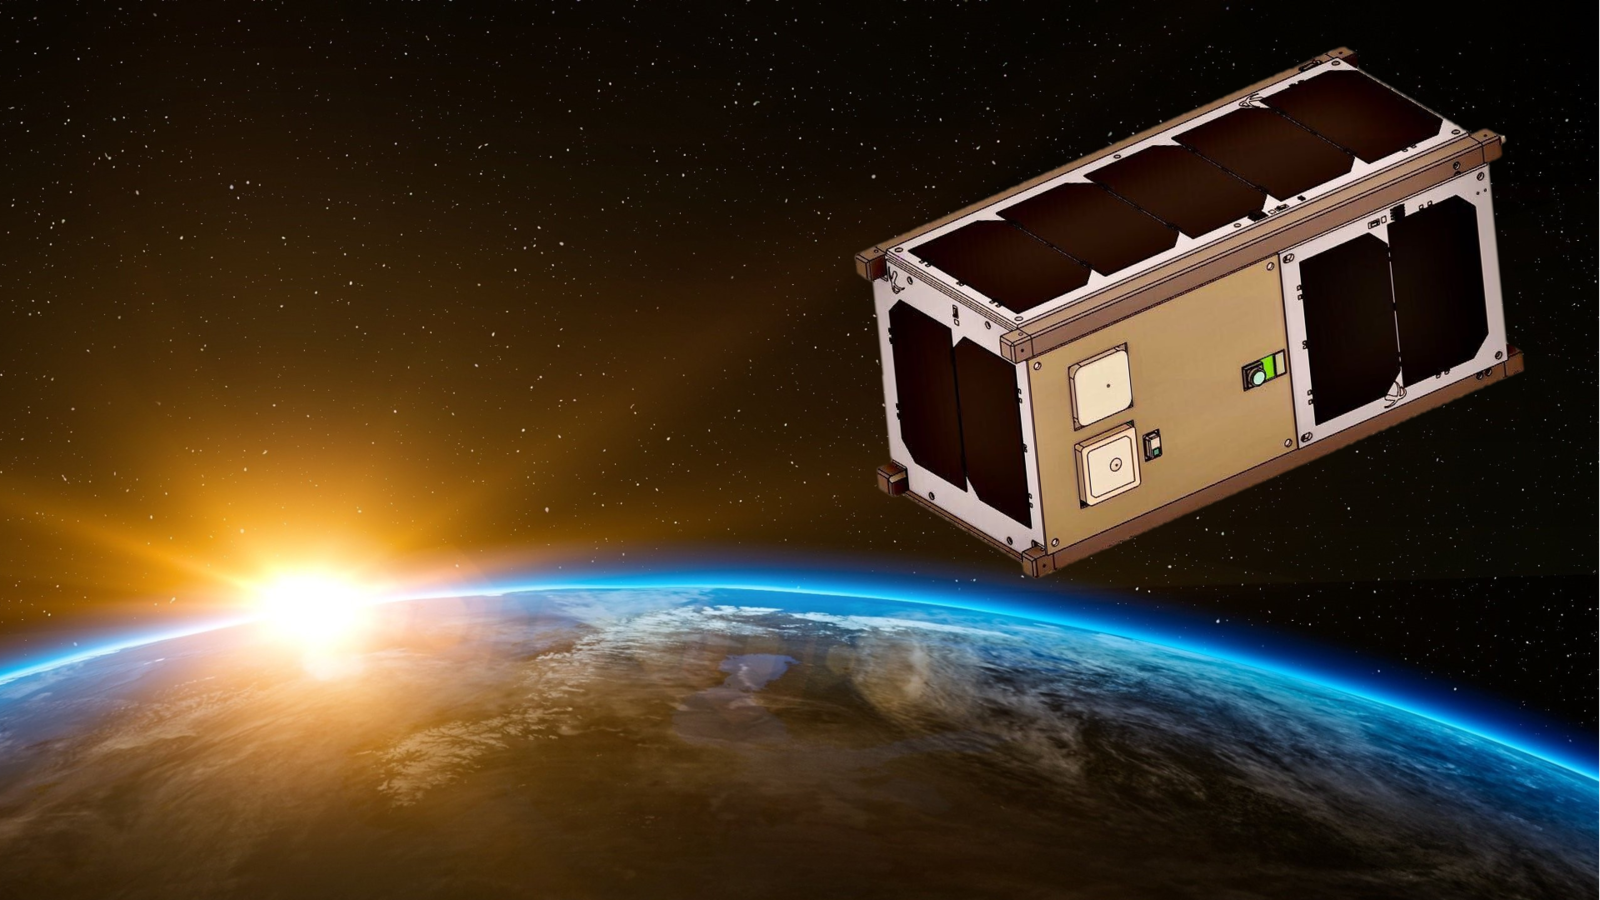 青山学院大学 超小型宇宙機研究所の速報実証衛星ARICA-2が JAXA 革新的衛星技術実証プログラムに選定